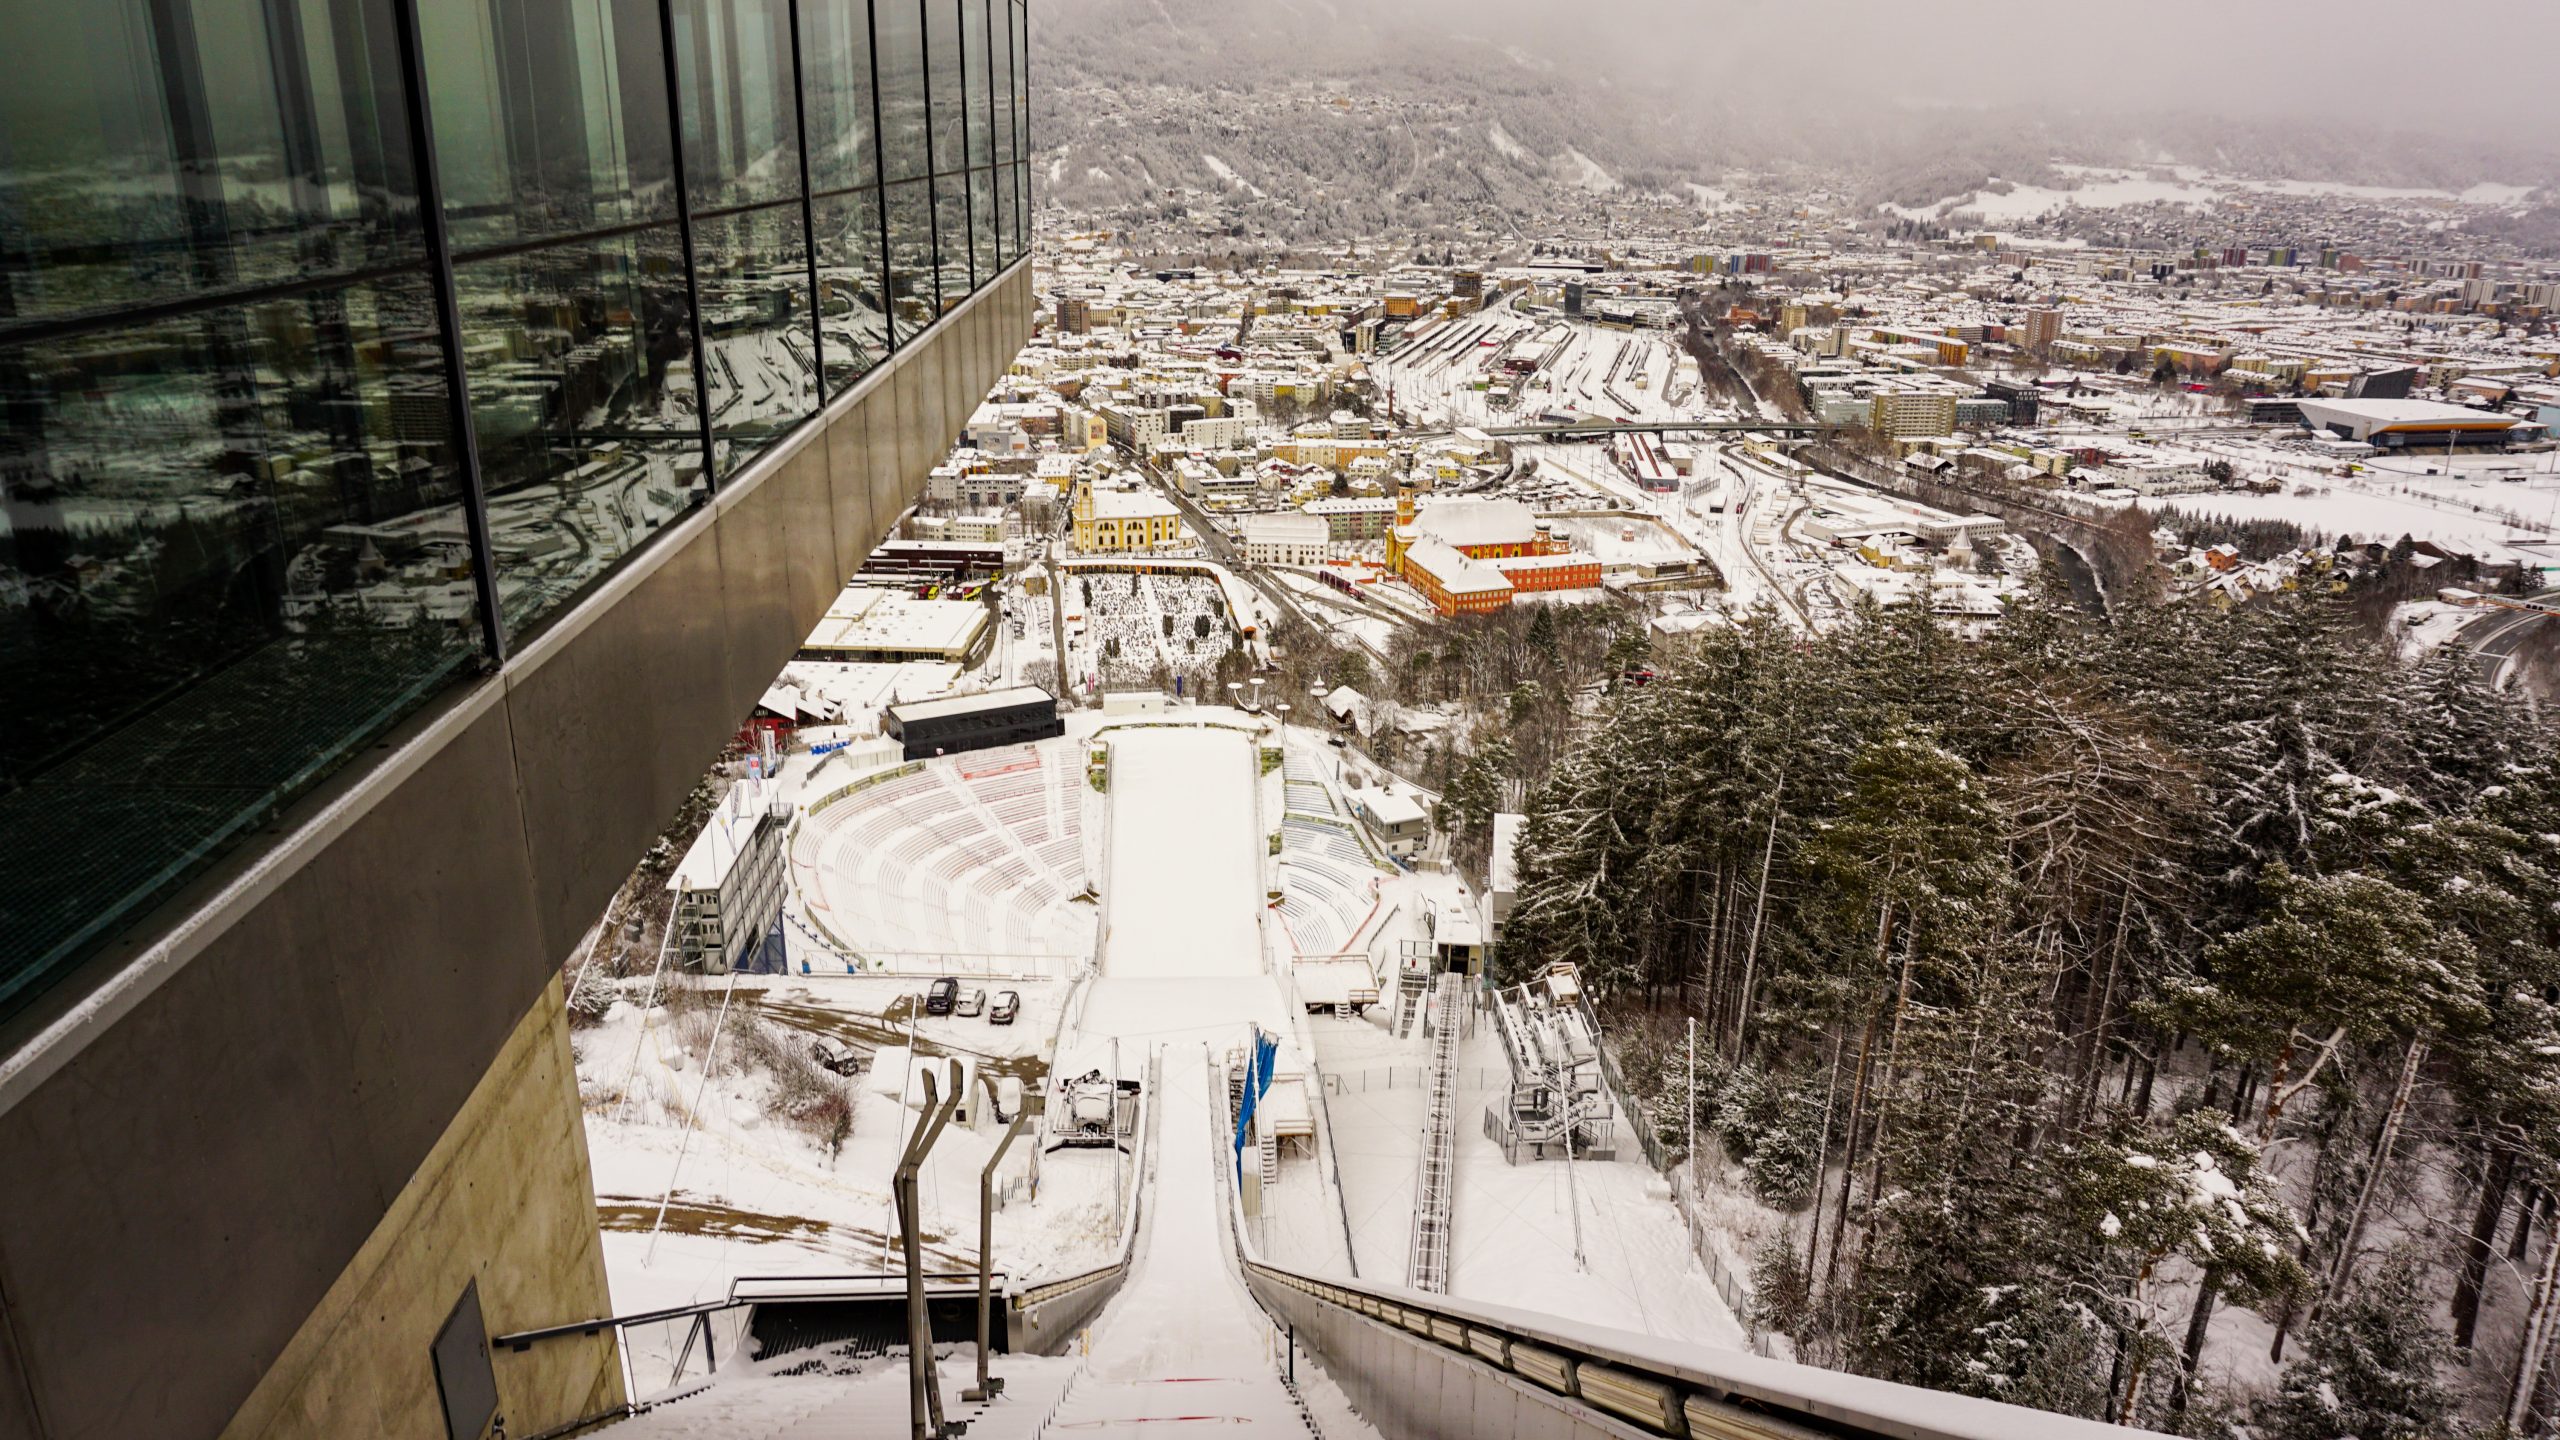 Bergisel Ski Jump platform and view